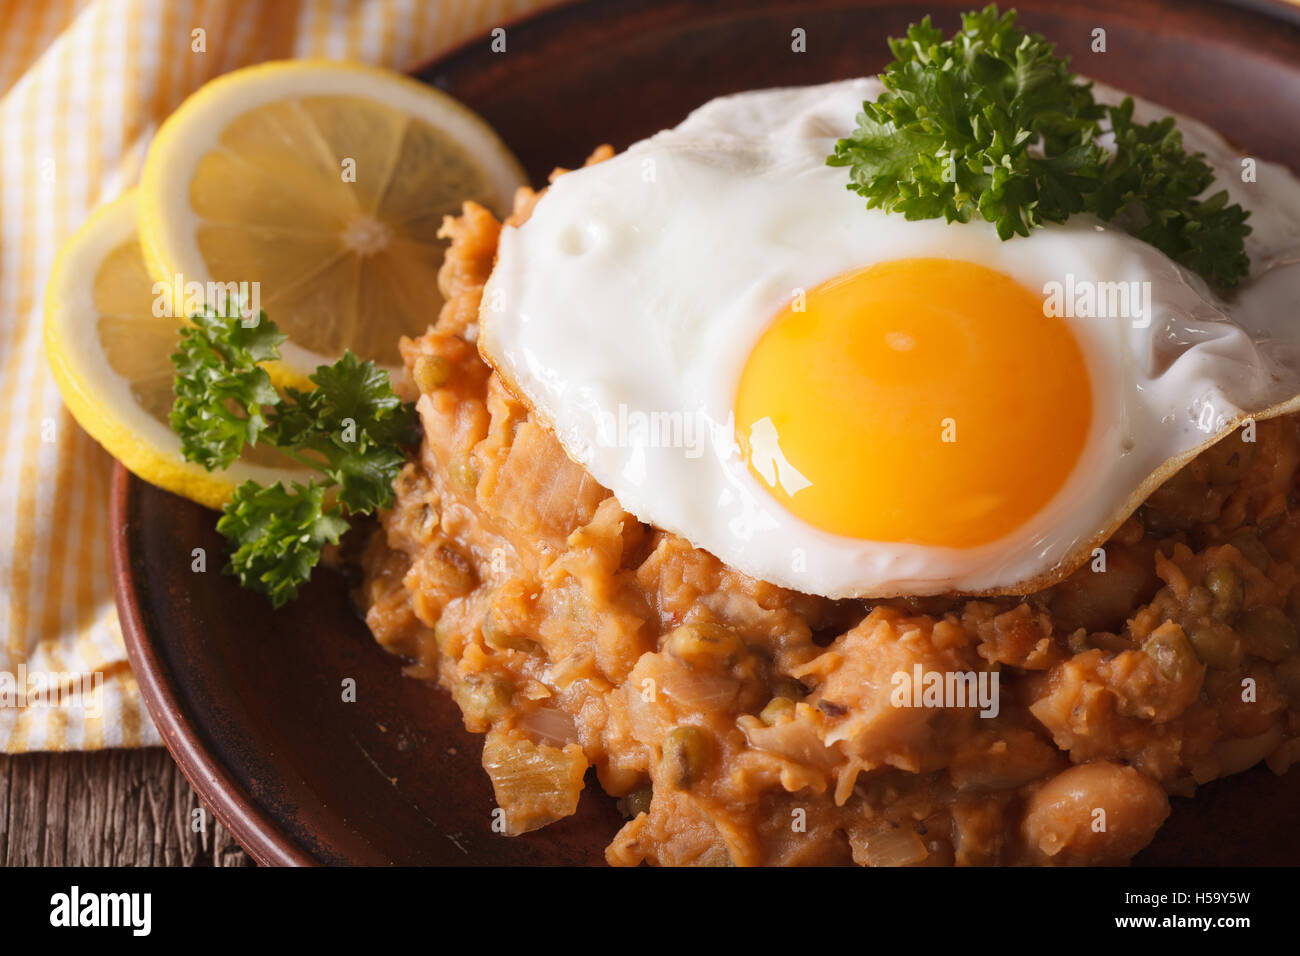 Cucina Araba: ful medames con un uovo fritto su una piastra macro. Posizione orizzontale Foto Stock